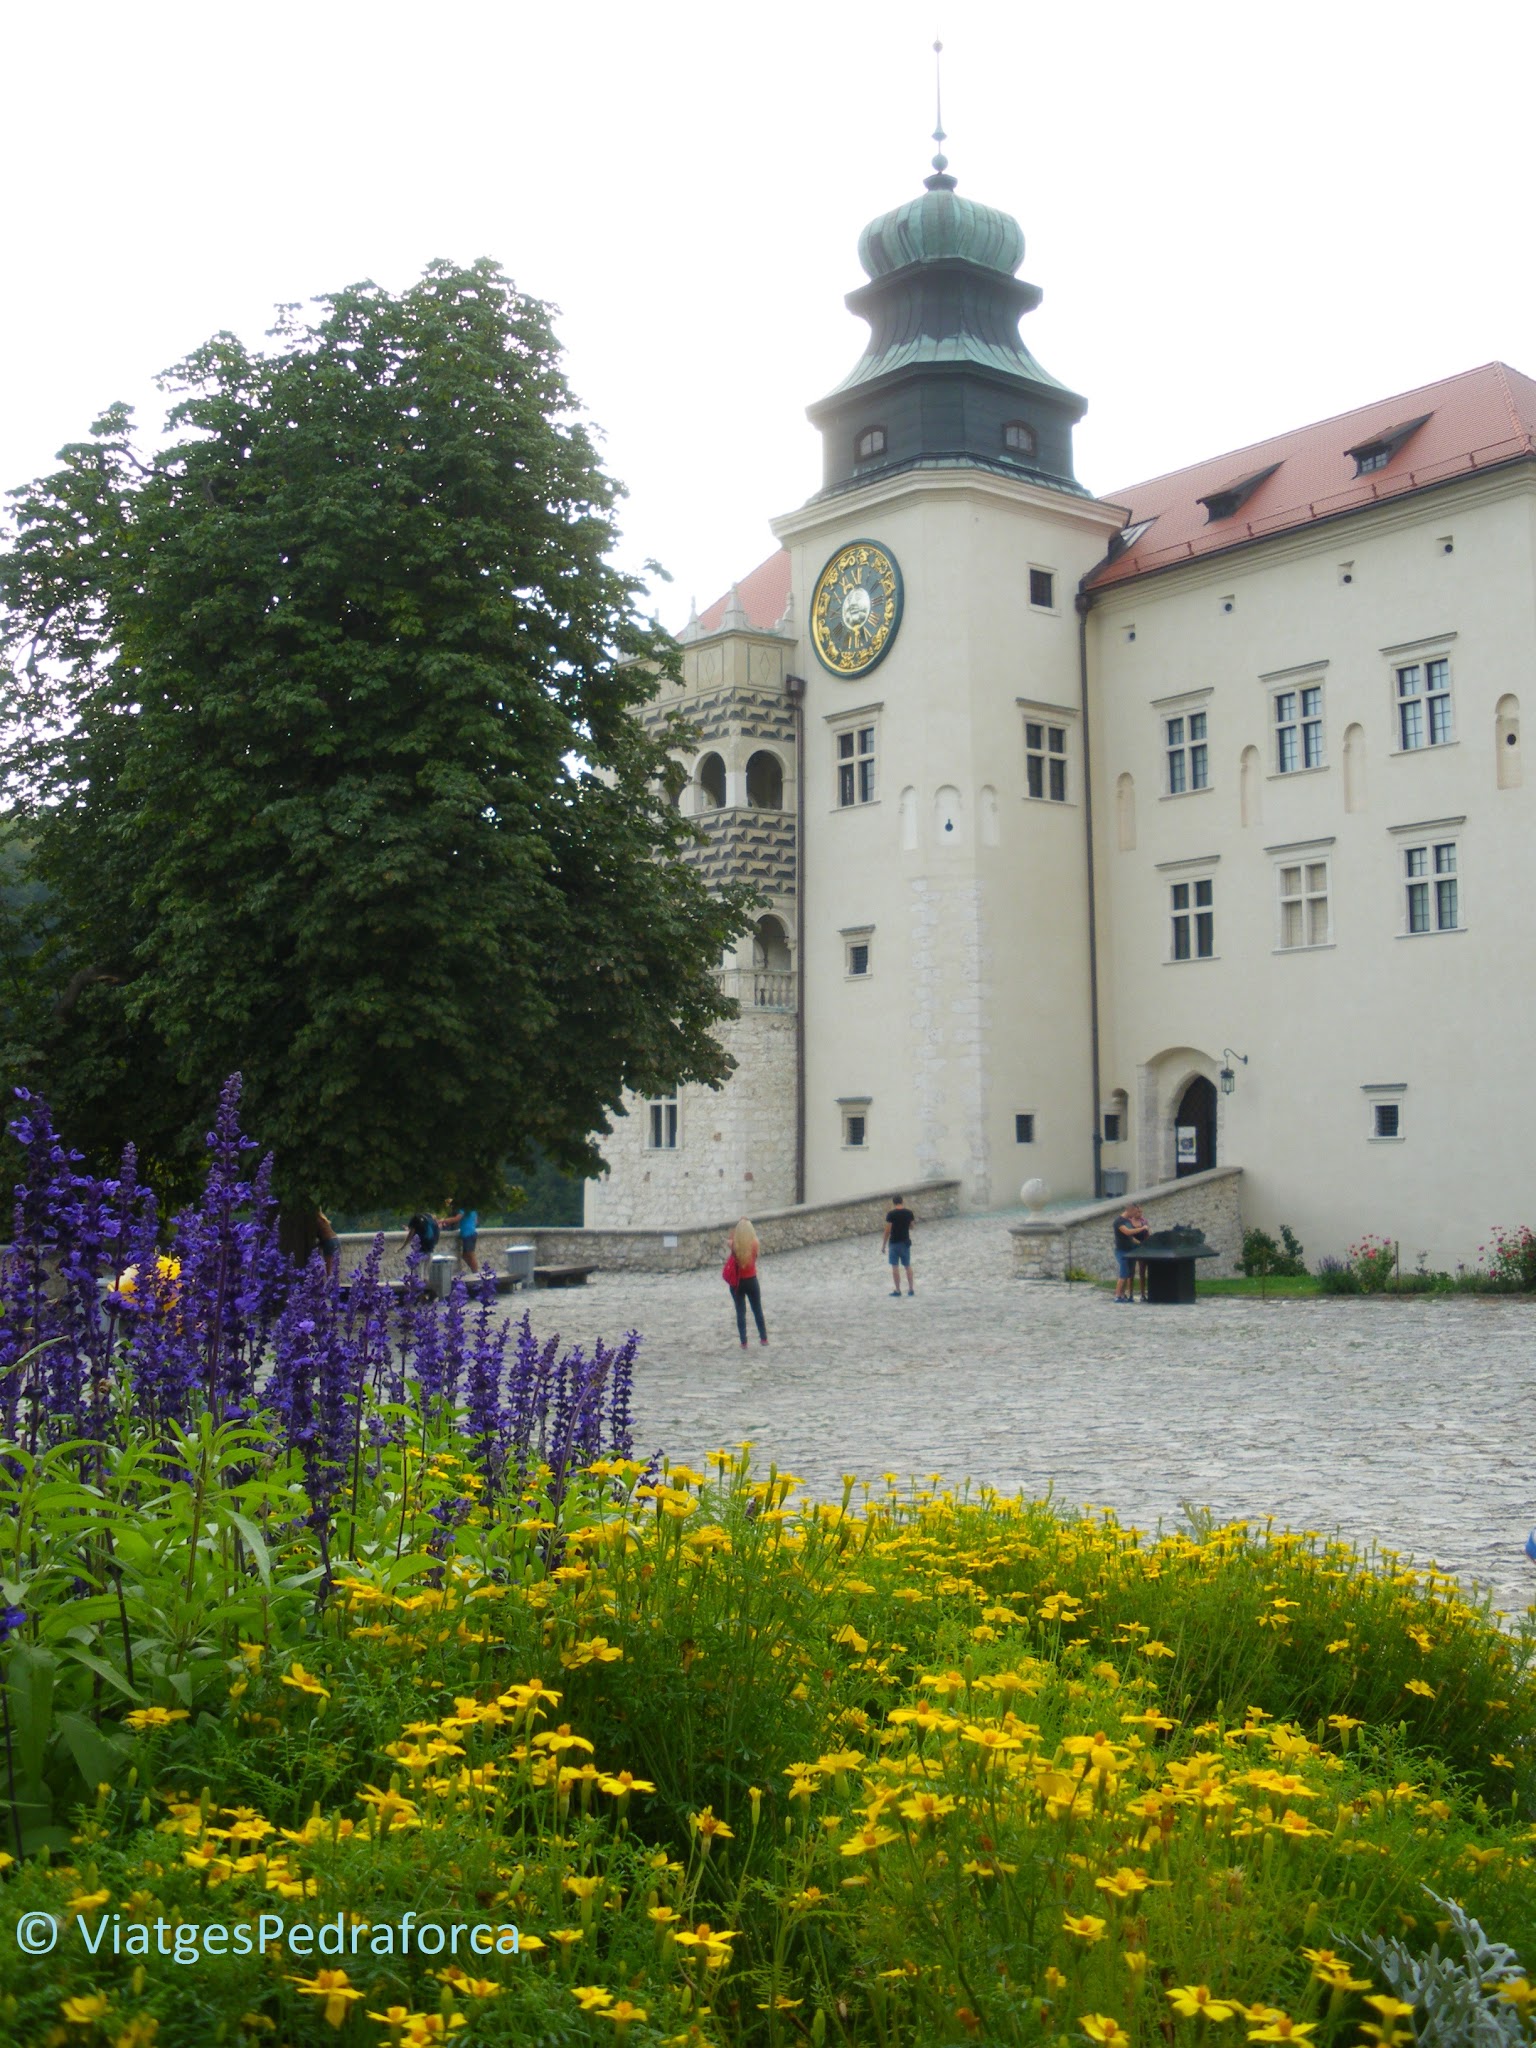 Zamek Pieskowa Skala, Ruta dels Nius d'Àliga, Polònia medieval, castells medievals, els millors castells d'Europa